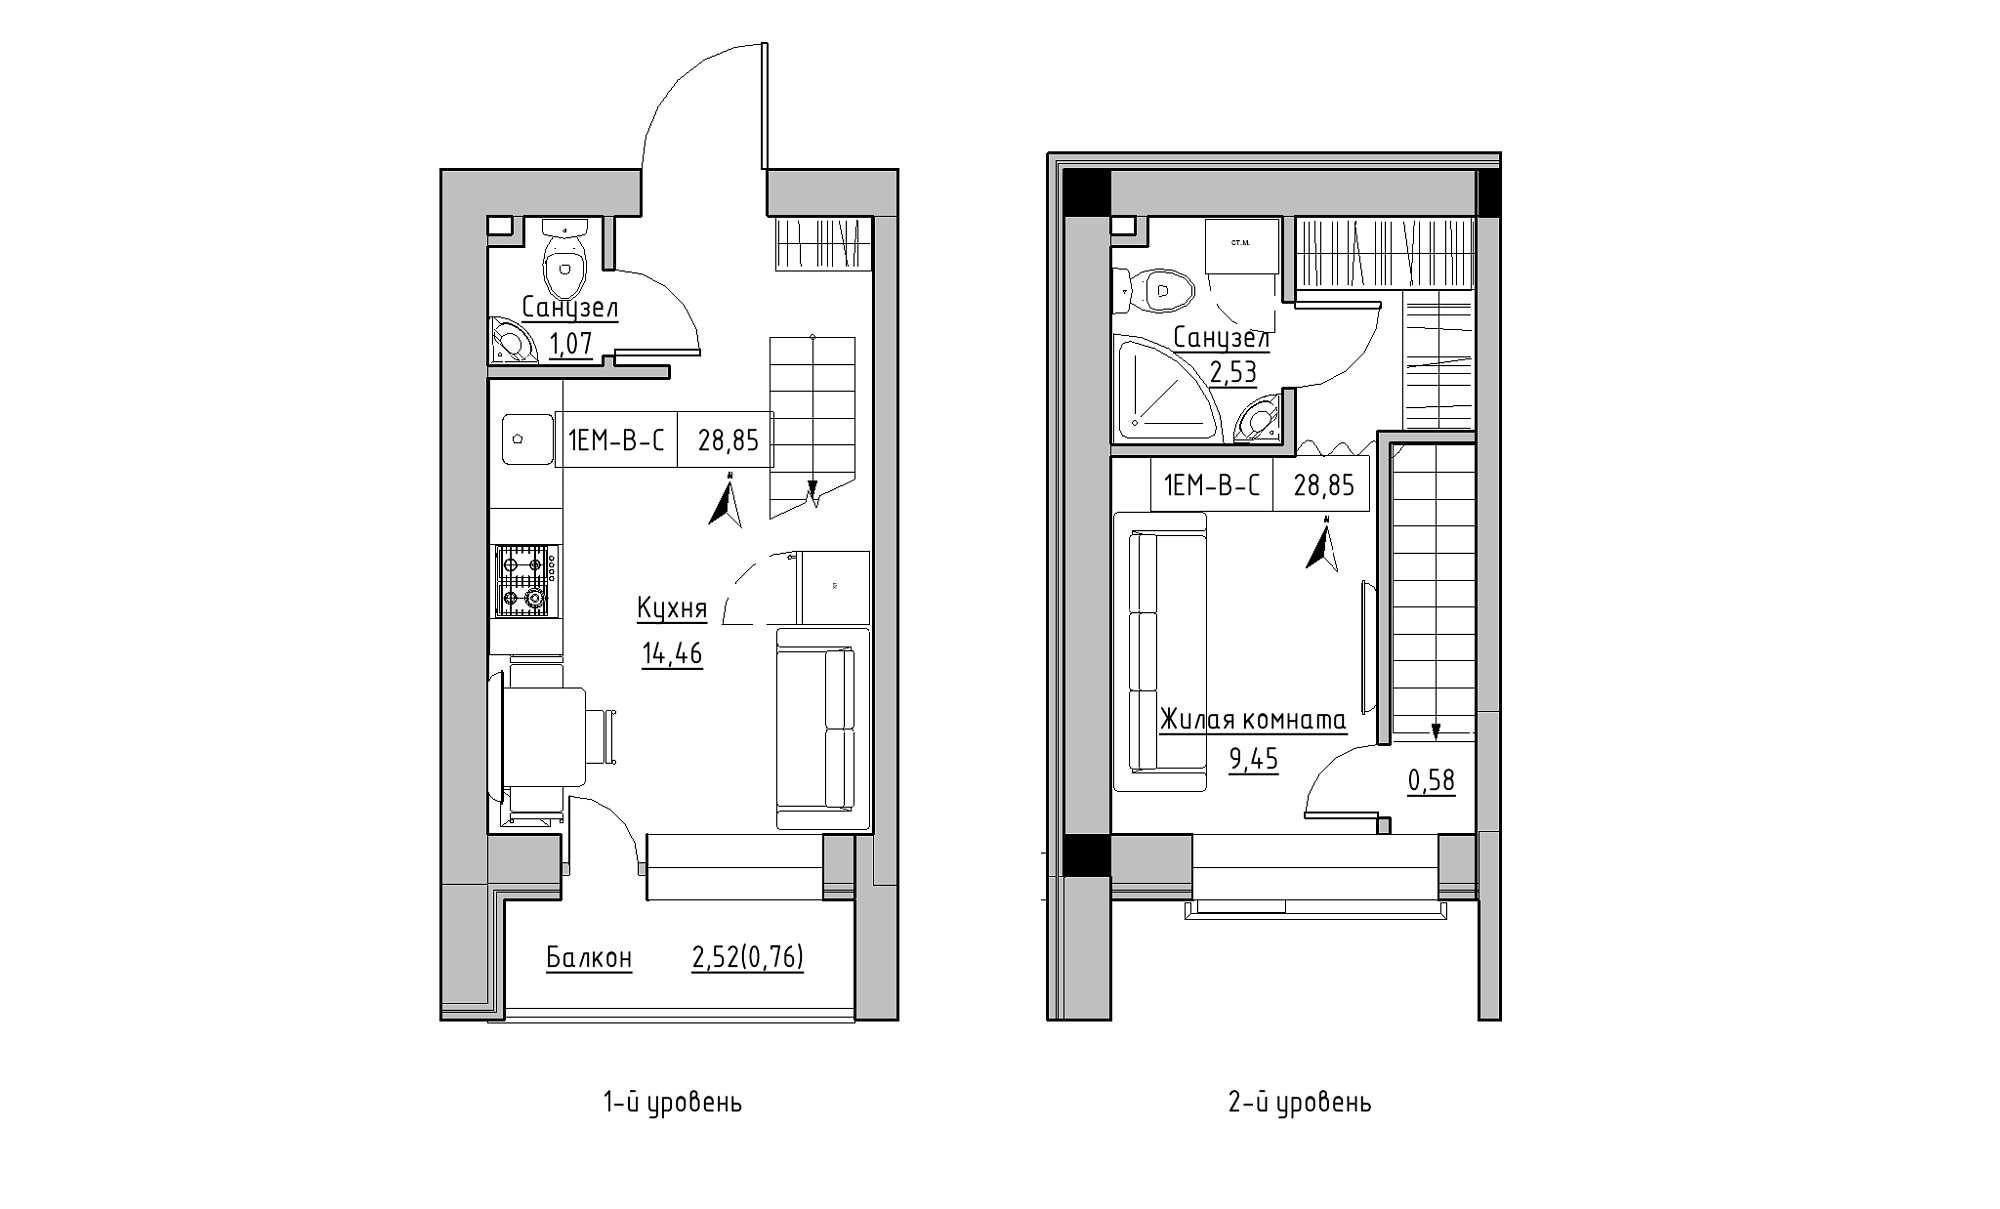 Planning 2-lvl flats area 28.85m2, KS-016-05/0006.